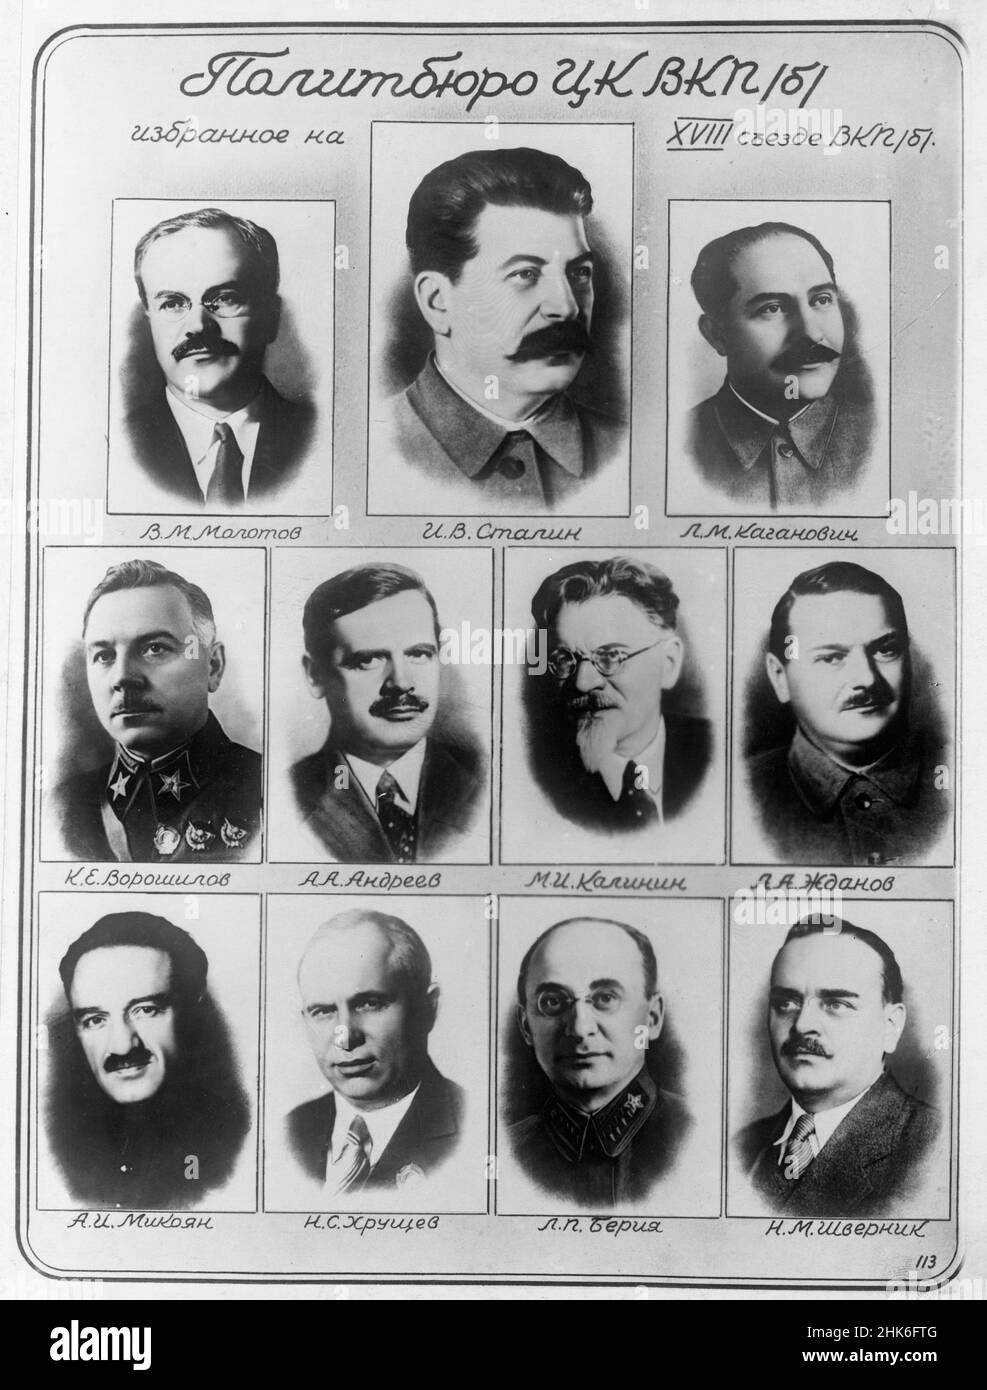 Foto compuesta en ruso de los líderes soviéticos de la era de Stalin. Foto de stock